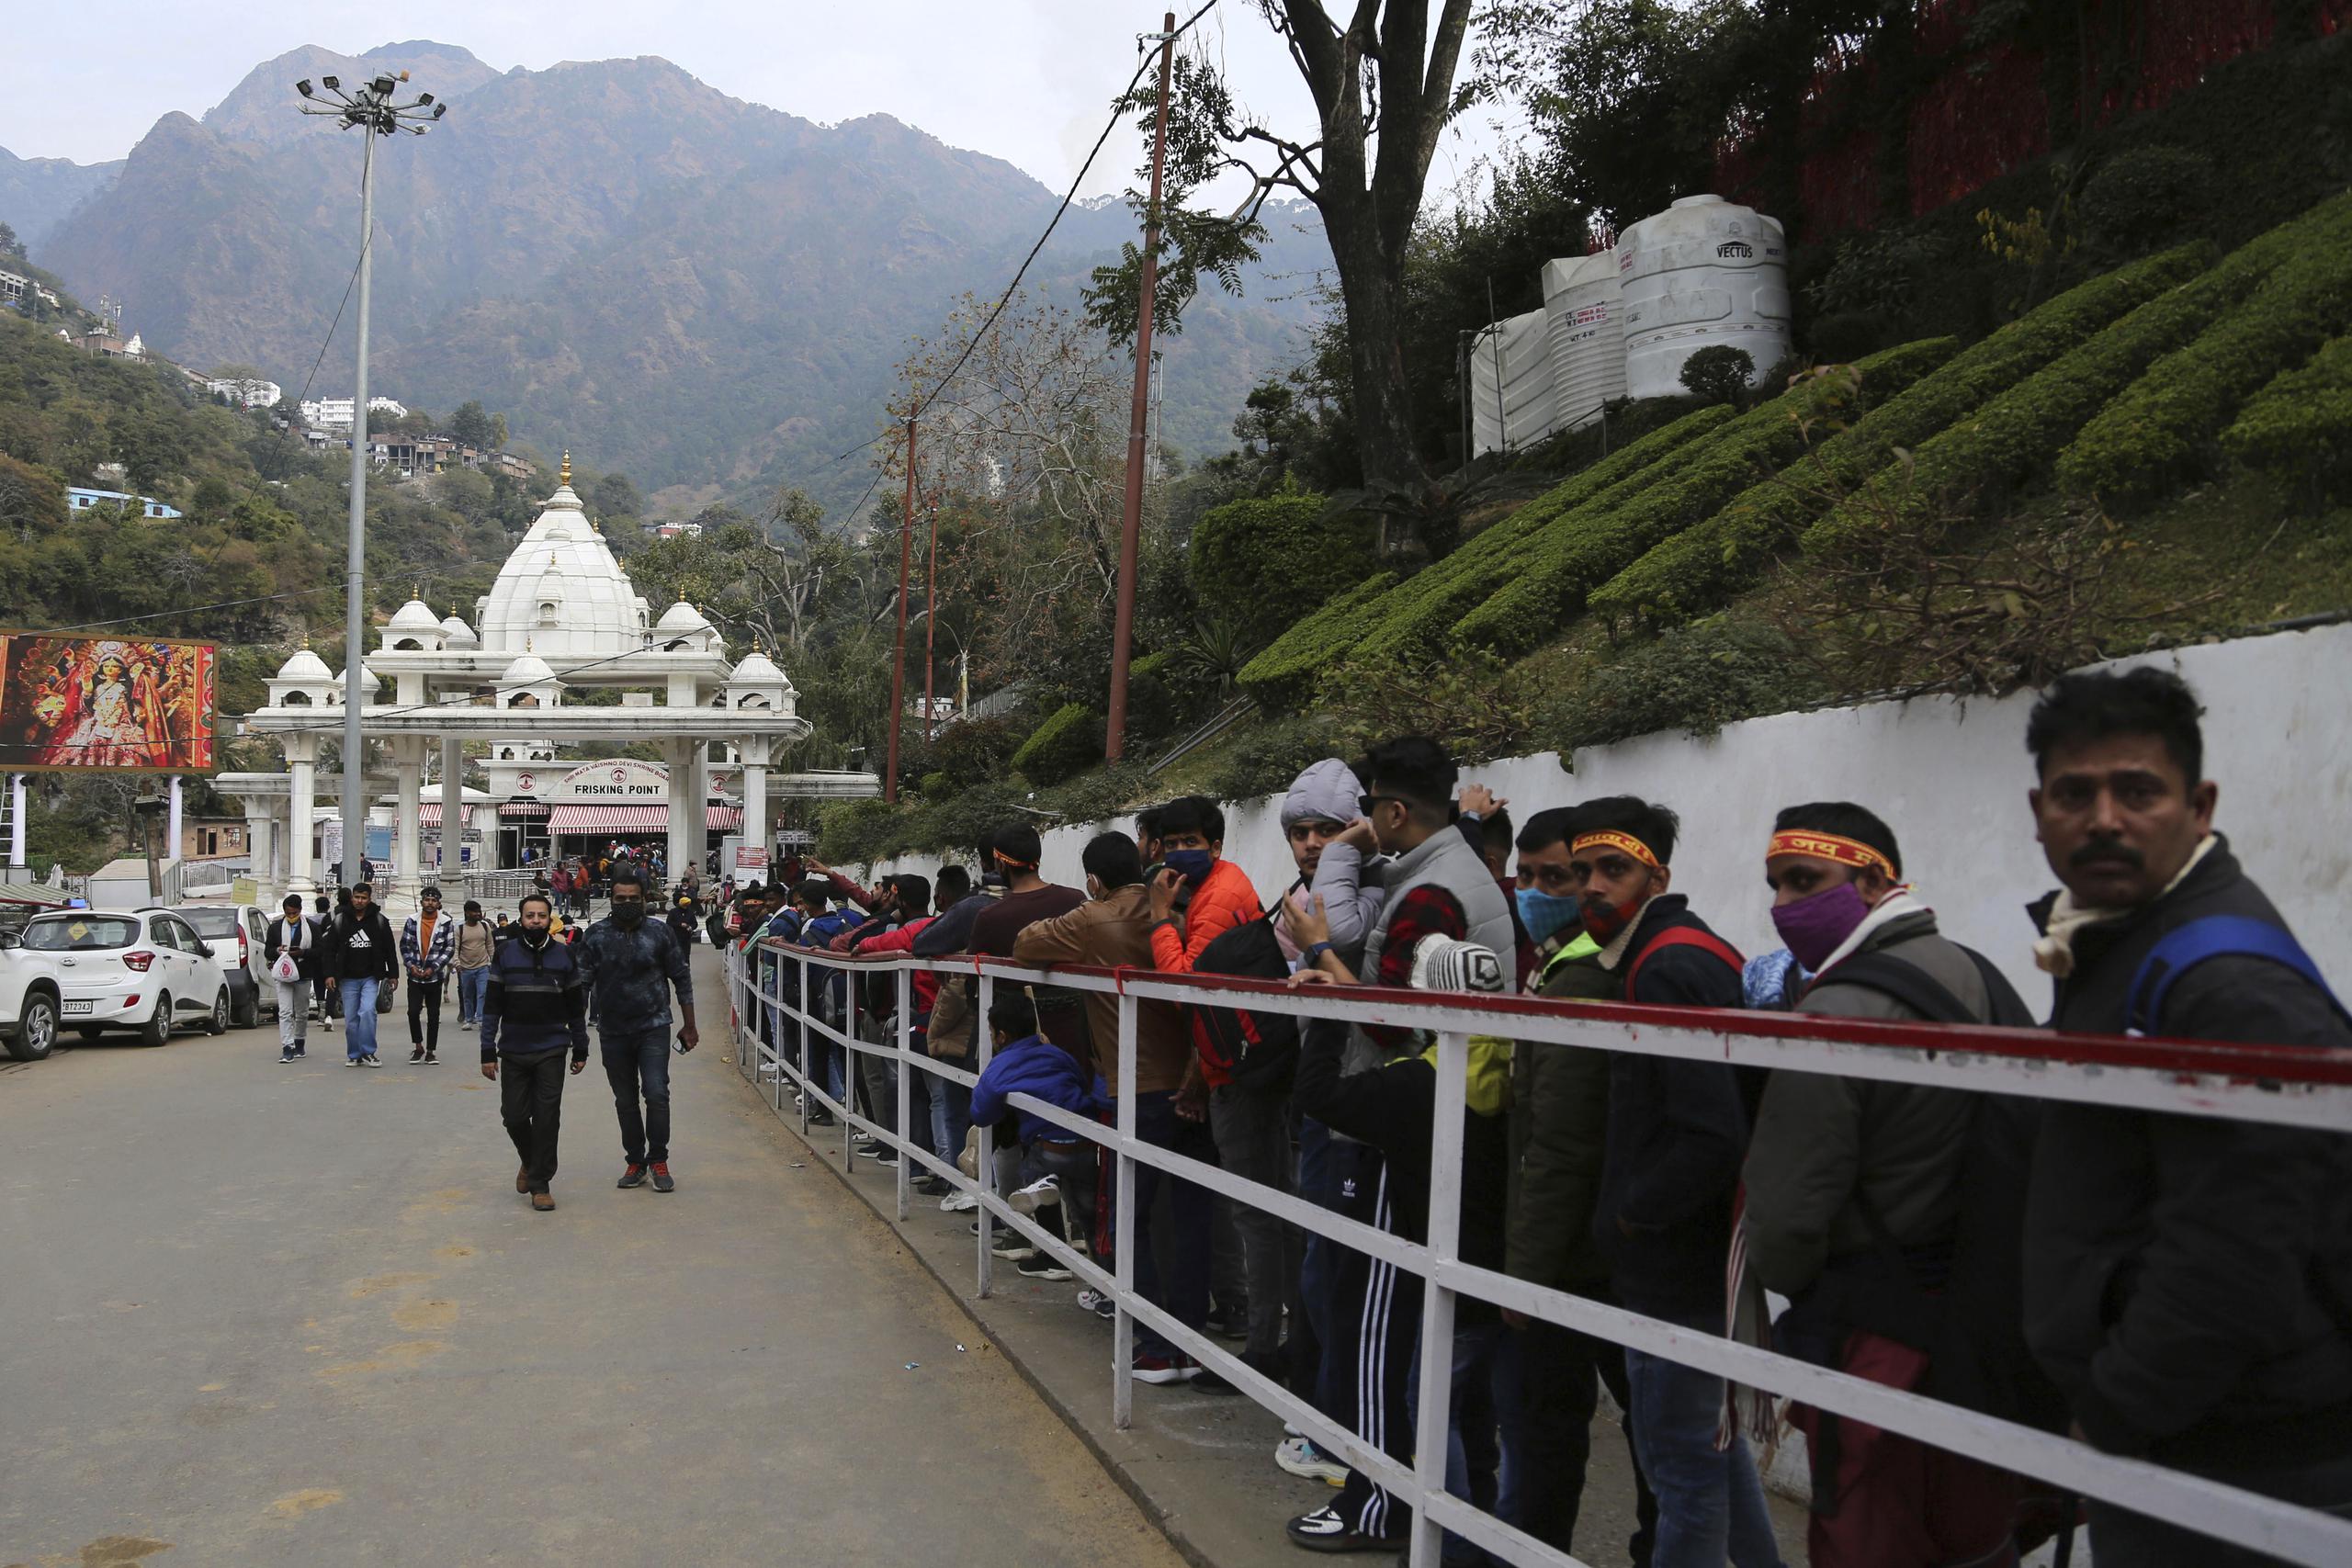 Los devotos hindúes hacen fila para comenzar su caminata hacia la cueva sagrada del santuario Mata Vaishnav Devi luego de una oleada de multitudes fatal, en Katra, India, el sábado 1 de enero de 2022. (Foto AP / Channi Anand)